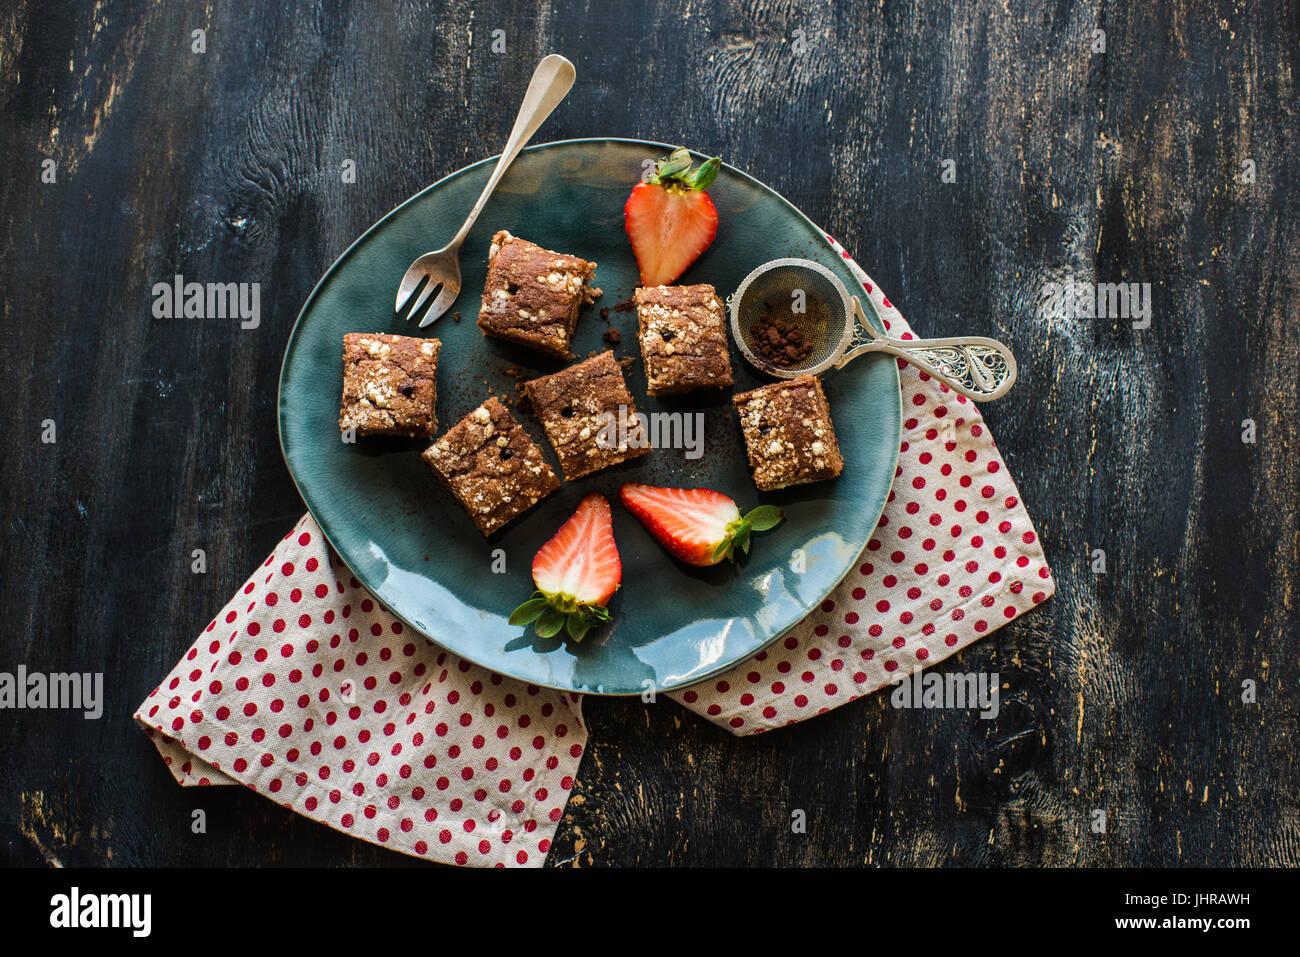 Chocolate german kuchen cake with strawberries Stock Photo